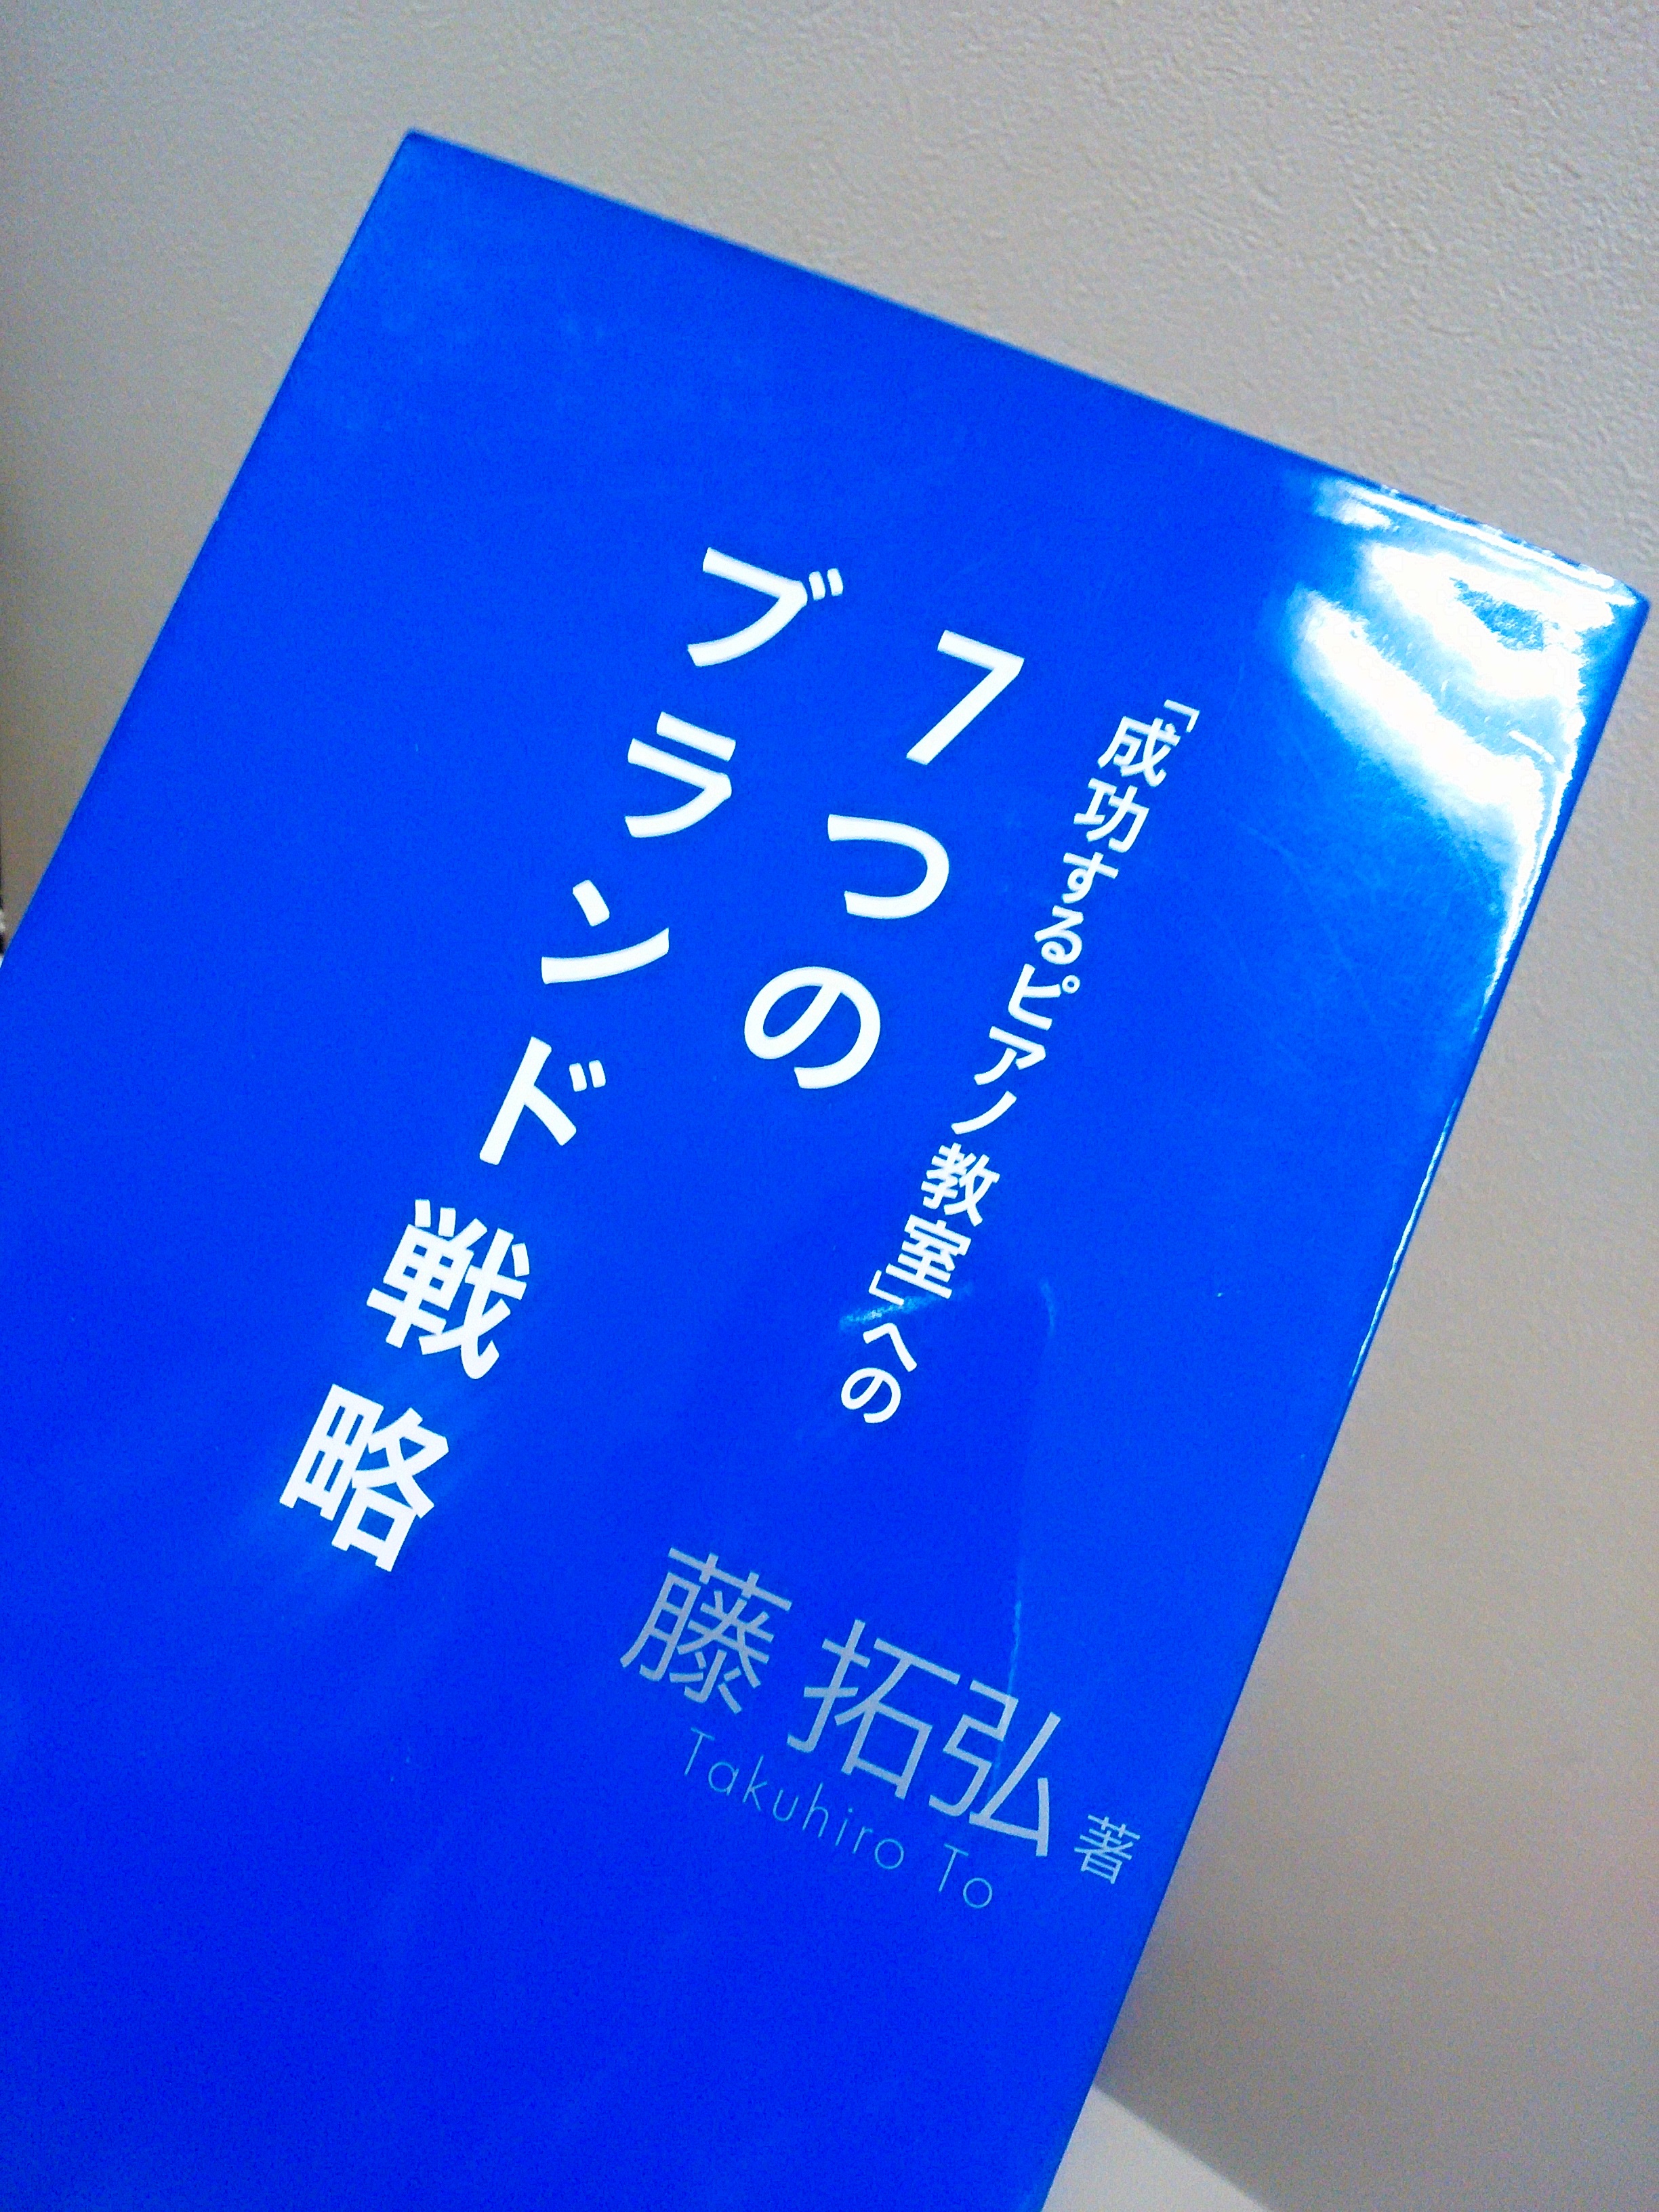 ７つのブランド戦略という青い本。